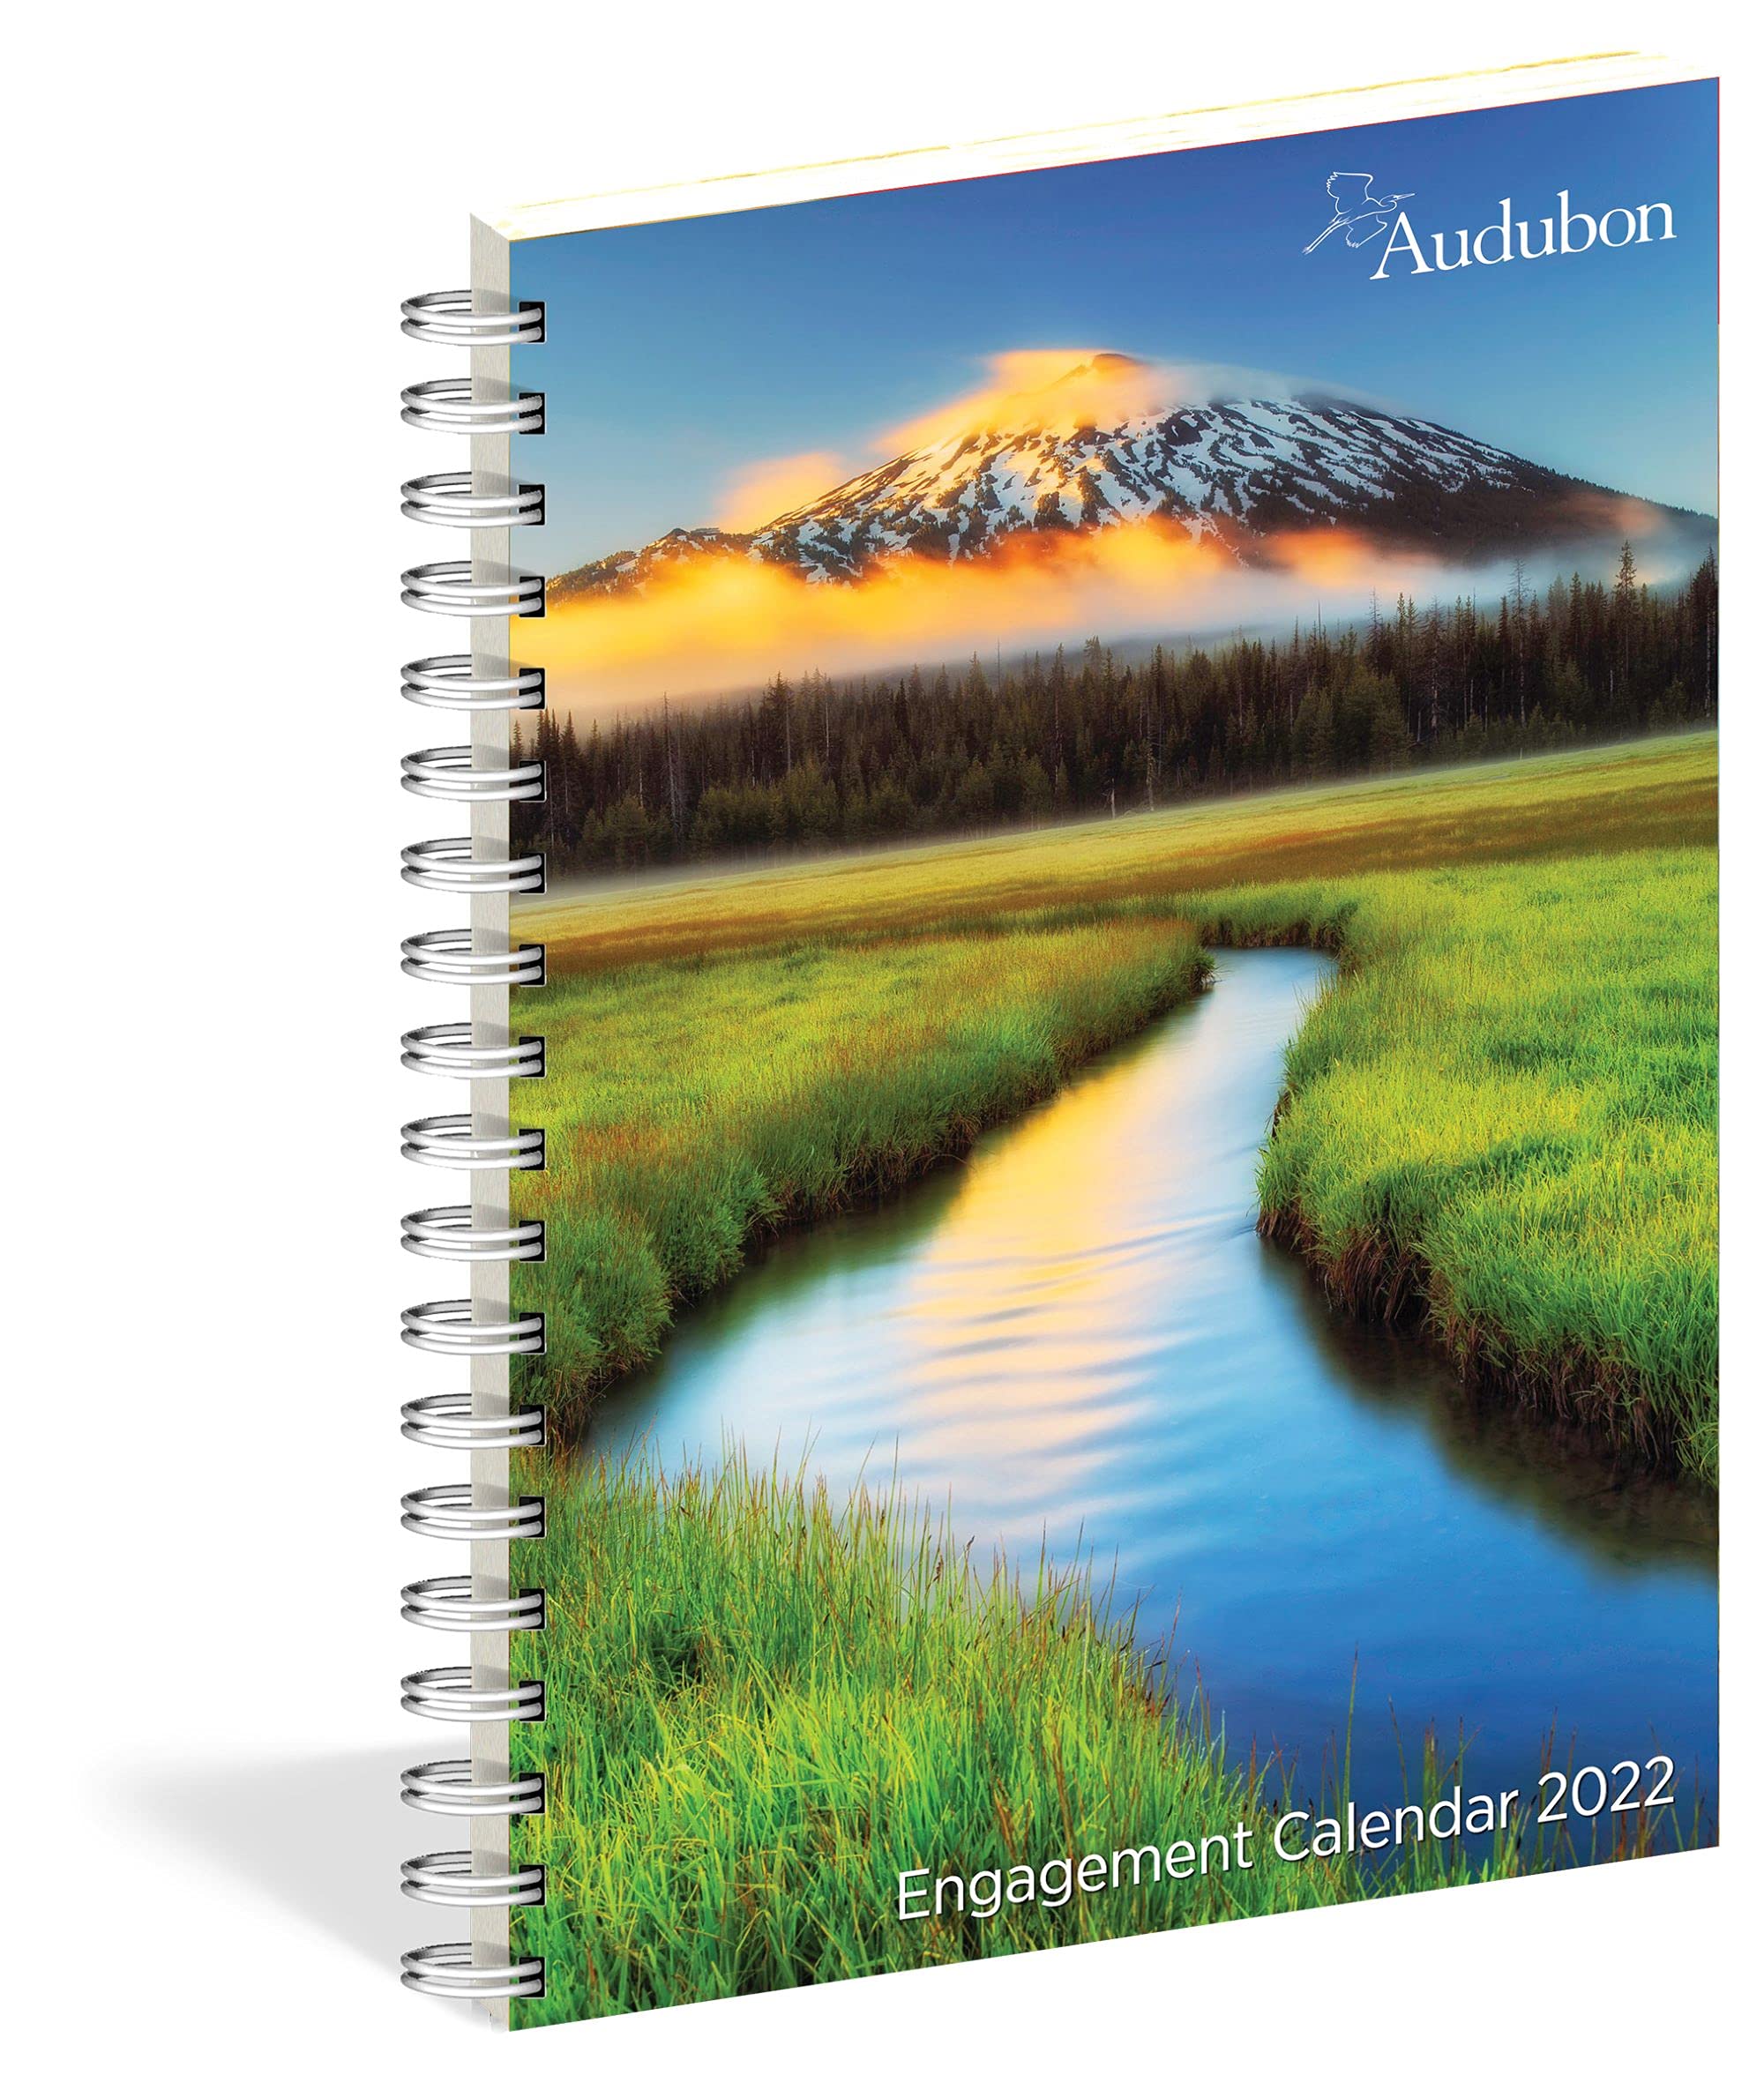 Mua Audubon Engagement Calendar 2022 trên Amazon Mỹ chính hãng 2022 Fado